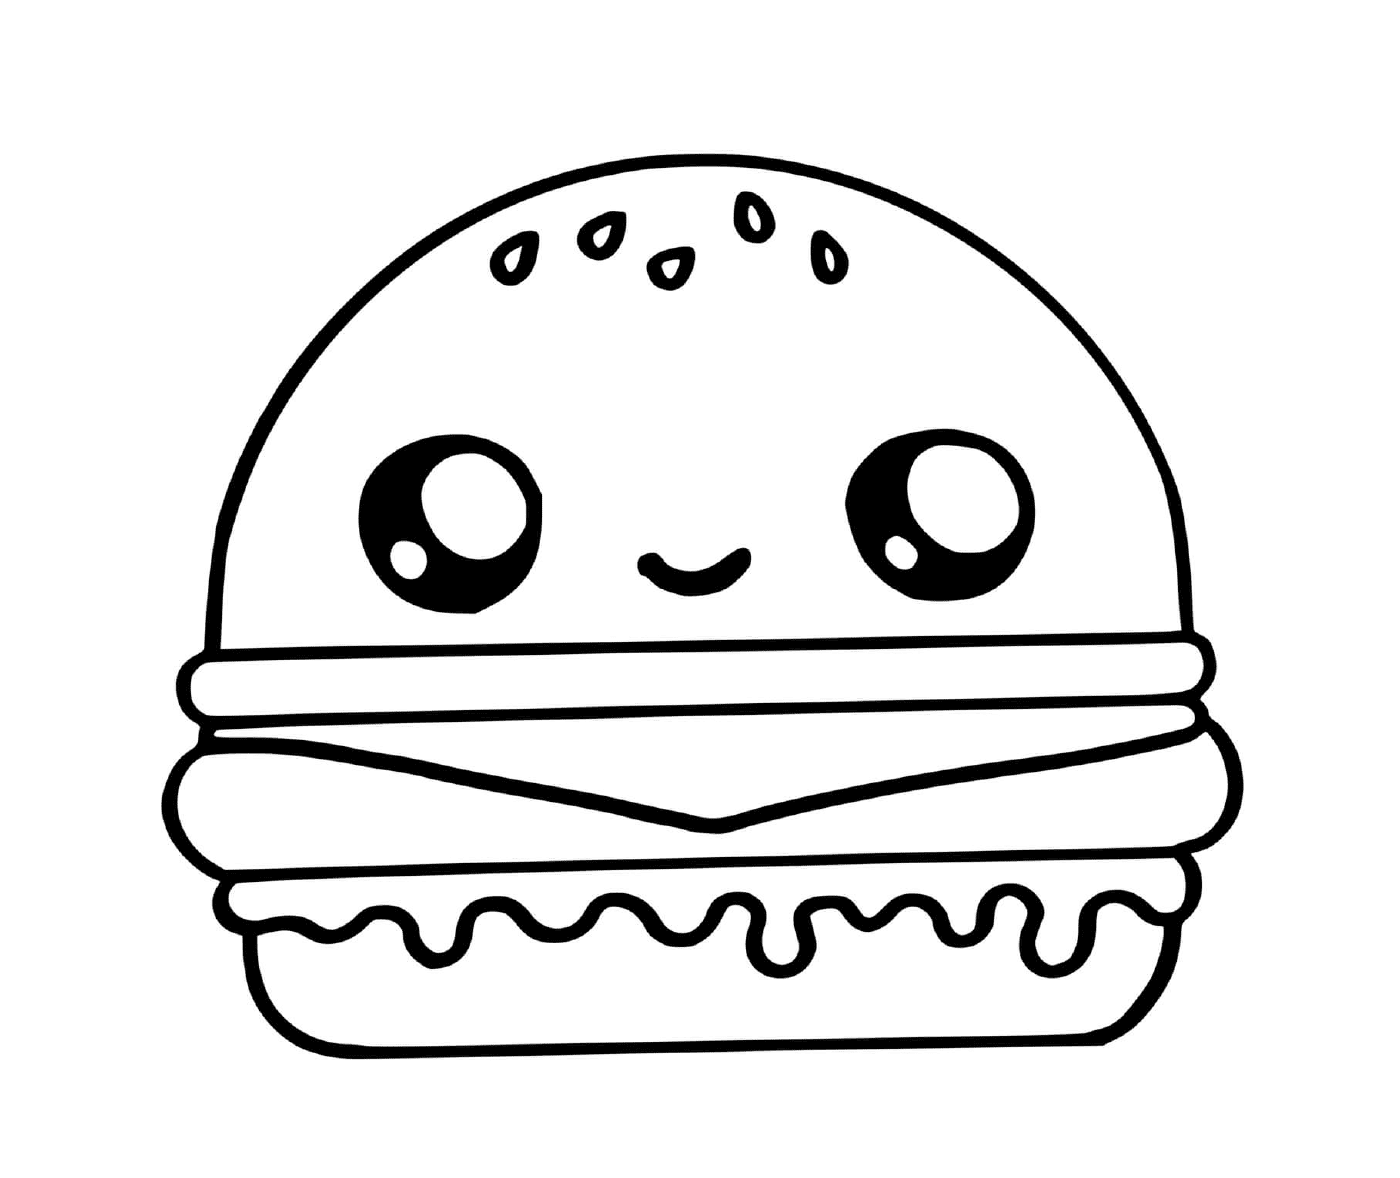  Hamburger kawaii, doce deleite 